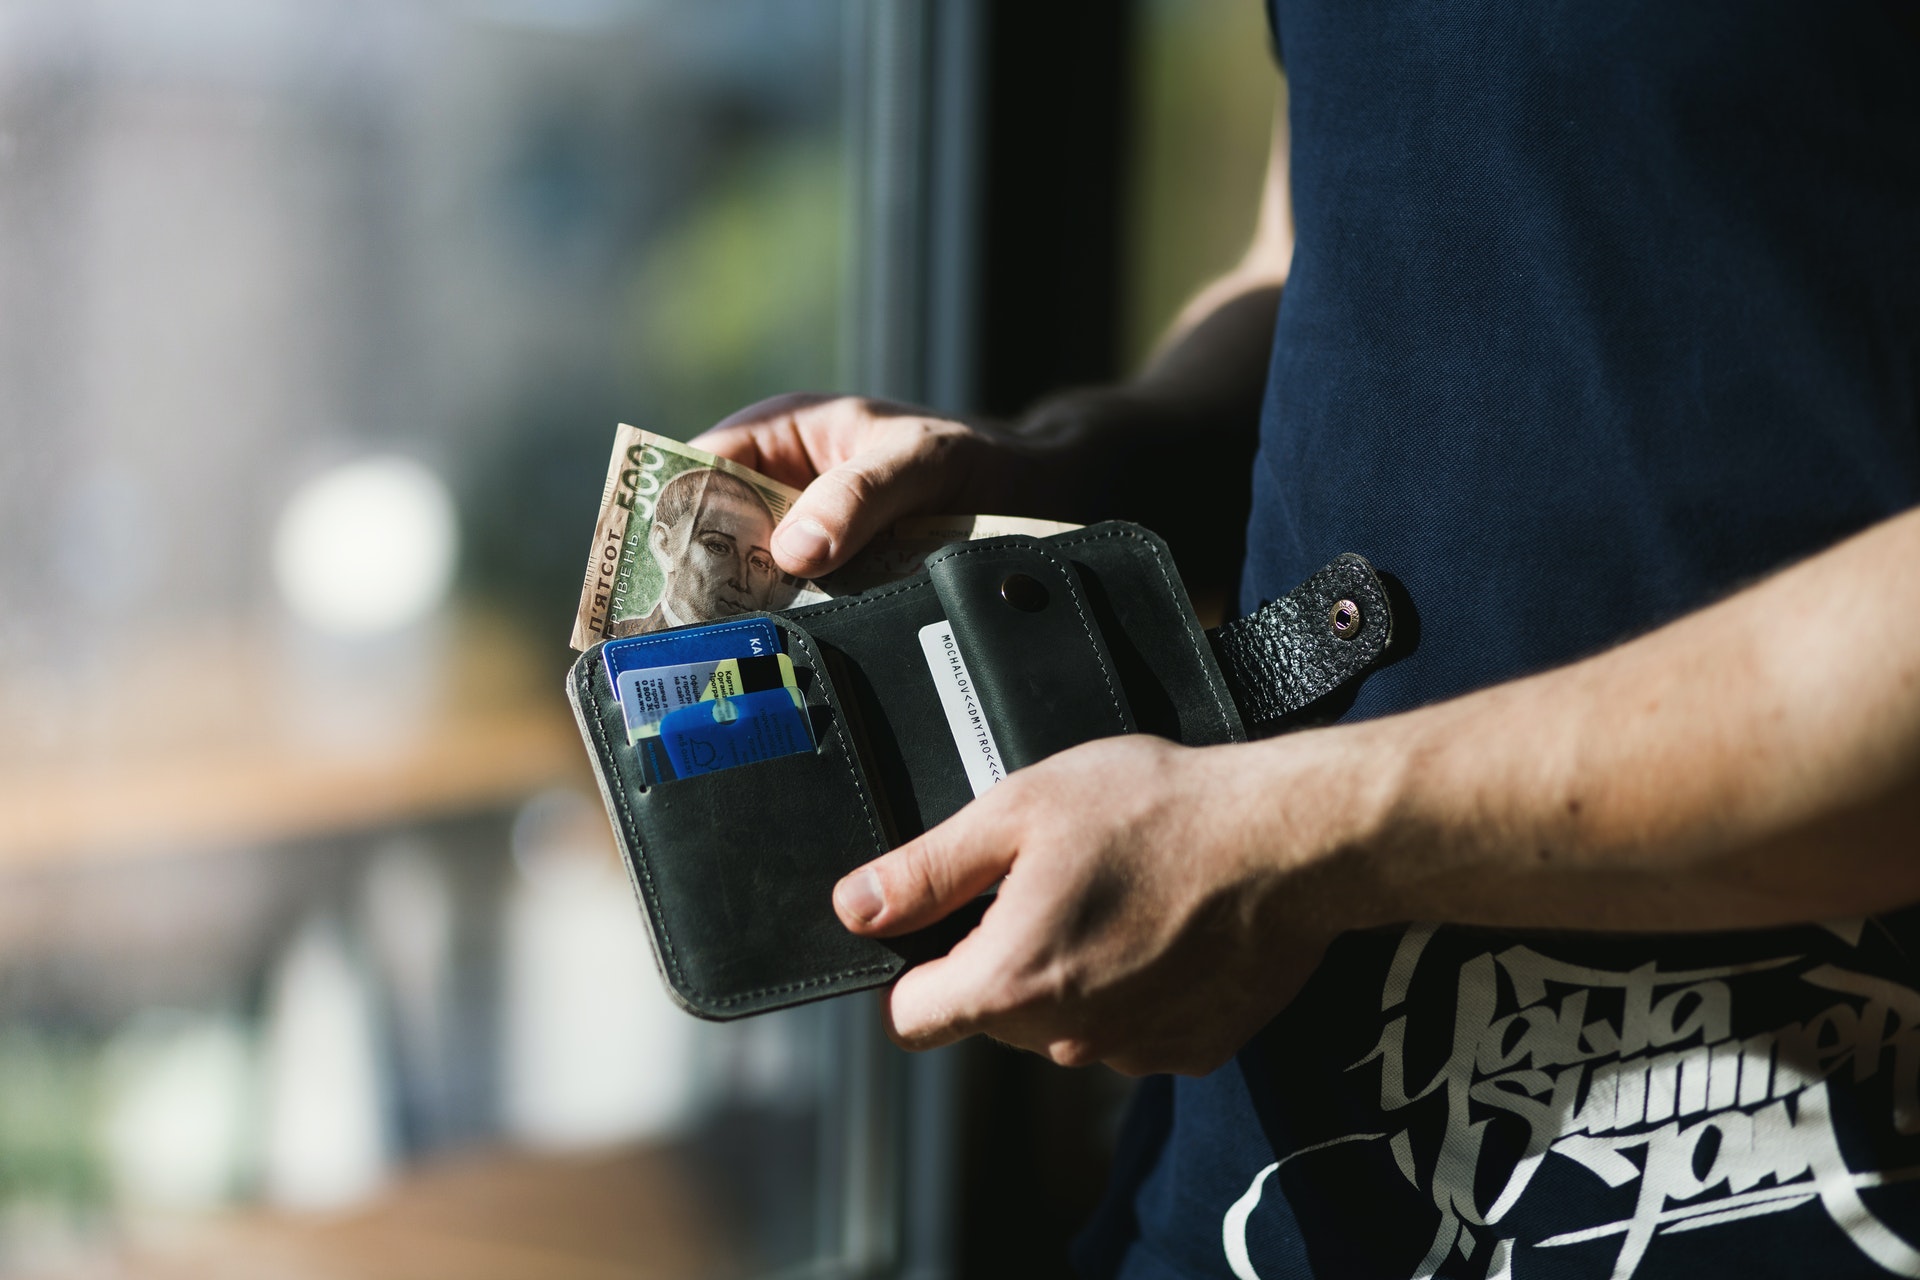 Tenha um limite de gastos para o cartão de crédito. Foto: Pexels / Evg Culture